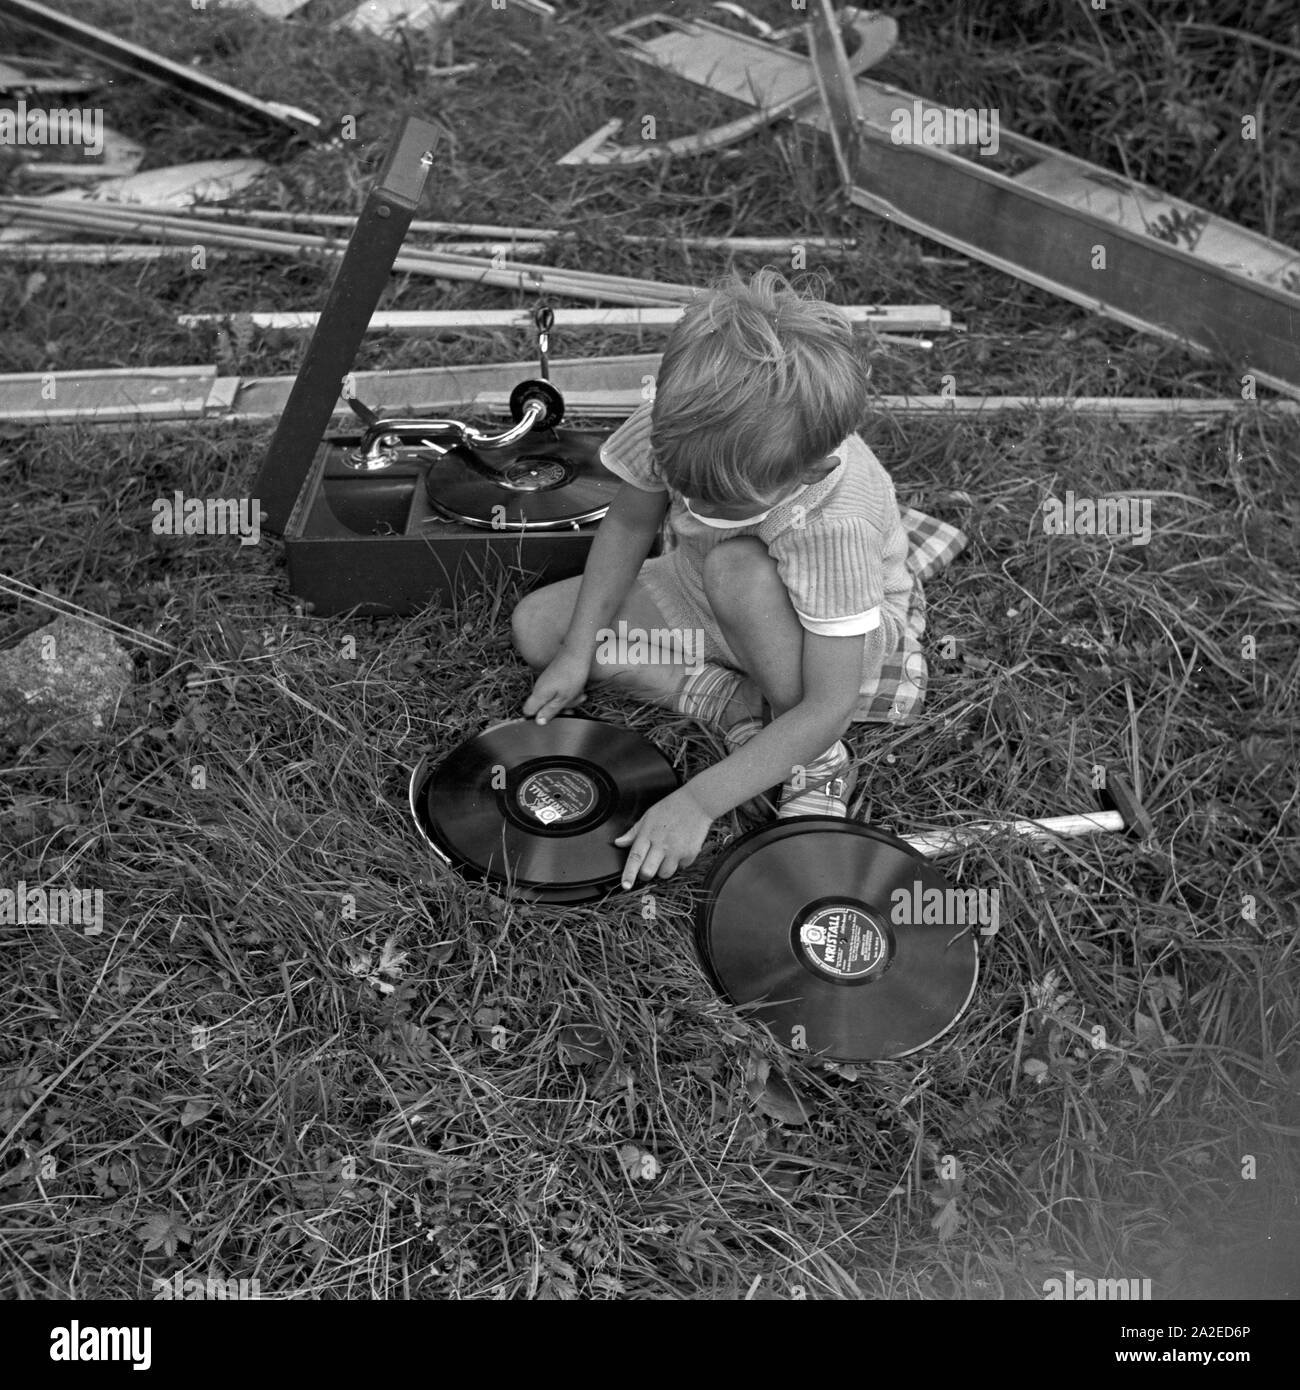 Ein kleiner Junge sortiert Schellackplatten bei Einems Electrola Koffer 106 Grammophon, Deutschland 1930er J Jahre. Ein kleiner Junge Auswahl einiger shellack Datensätze in der Nähe einer Electrola Koffer 106 Koffer Grammophon, Deutschland 1930. Stockfoto